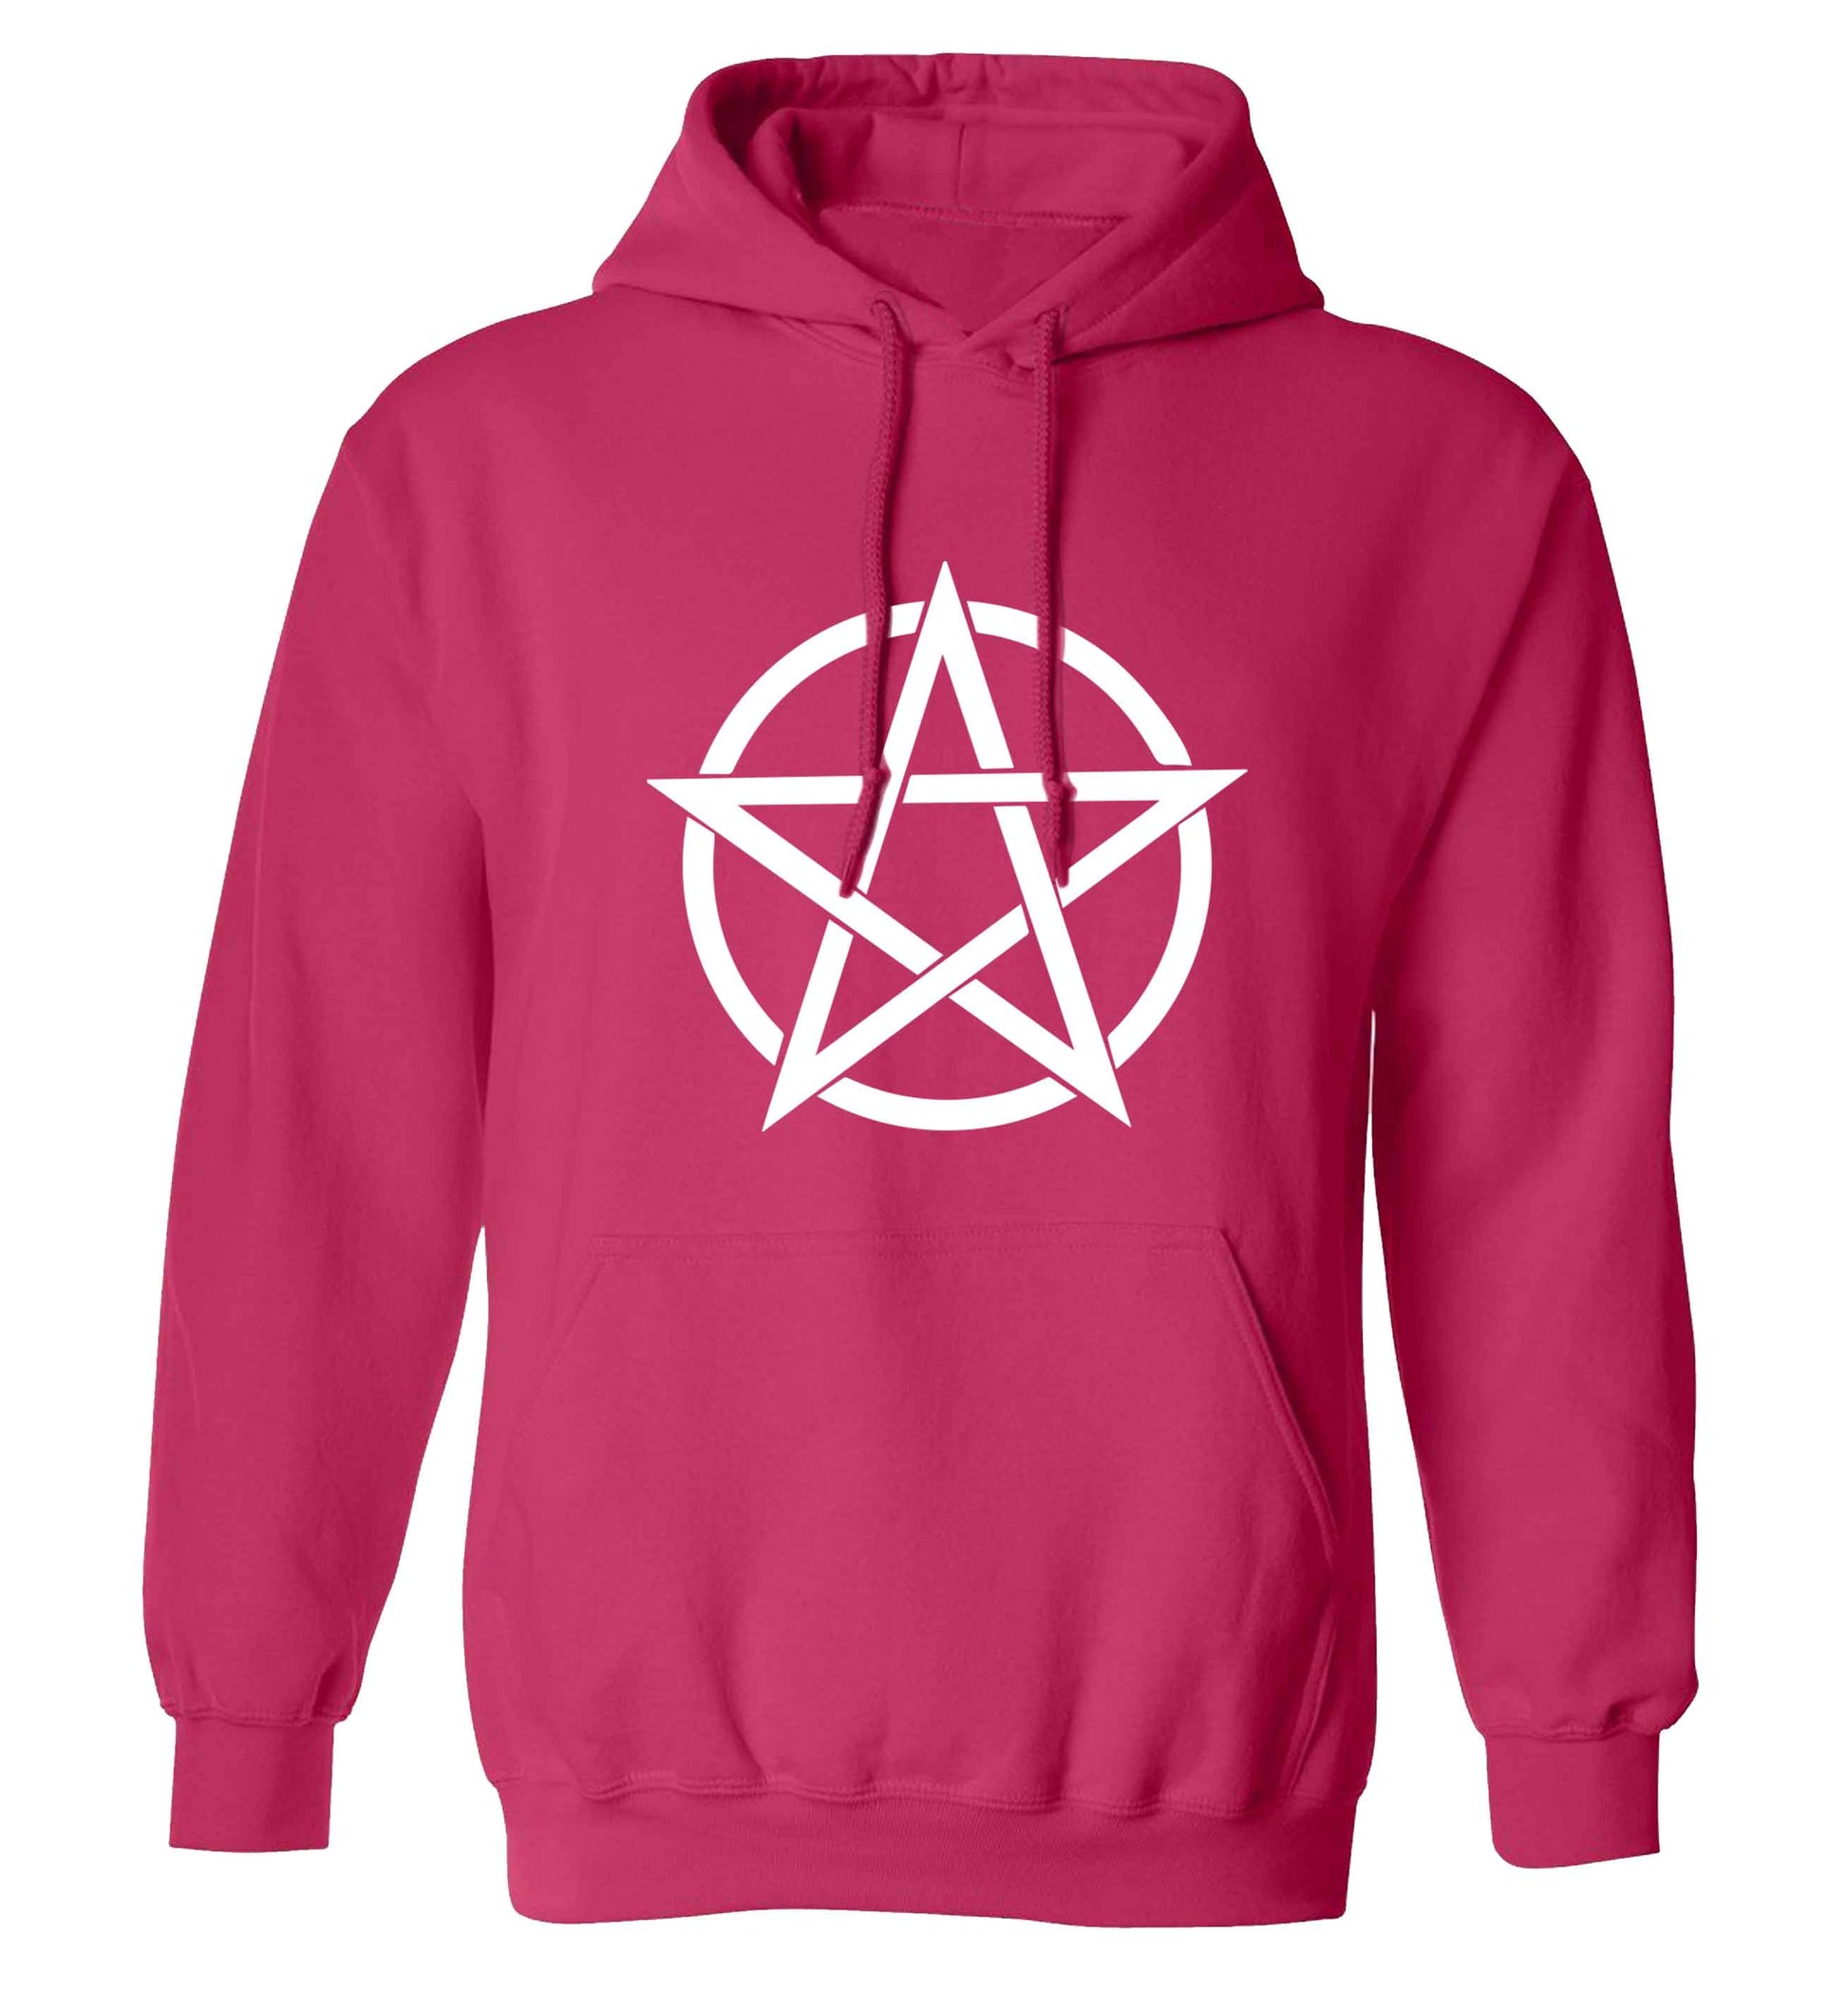 Pentagram symbol adults unisex pink hoodie 2XL